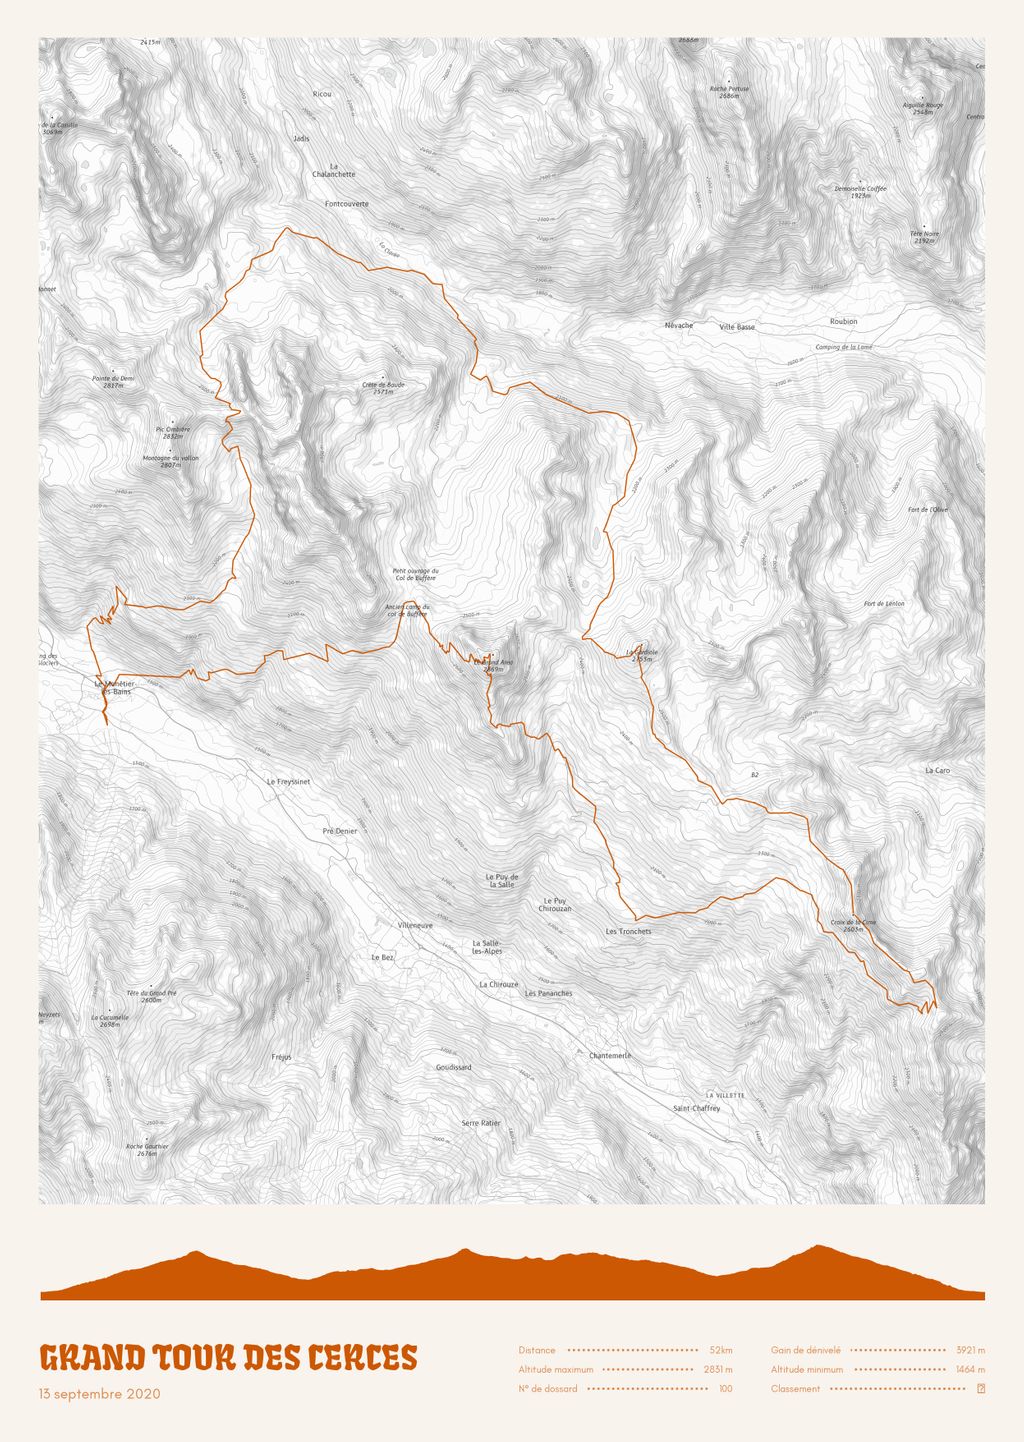 Póster con un mapa de Grand Tour des Cerces